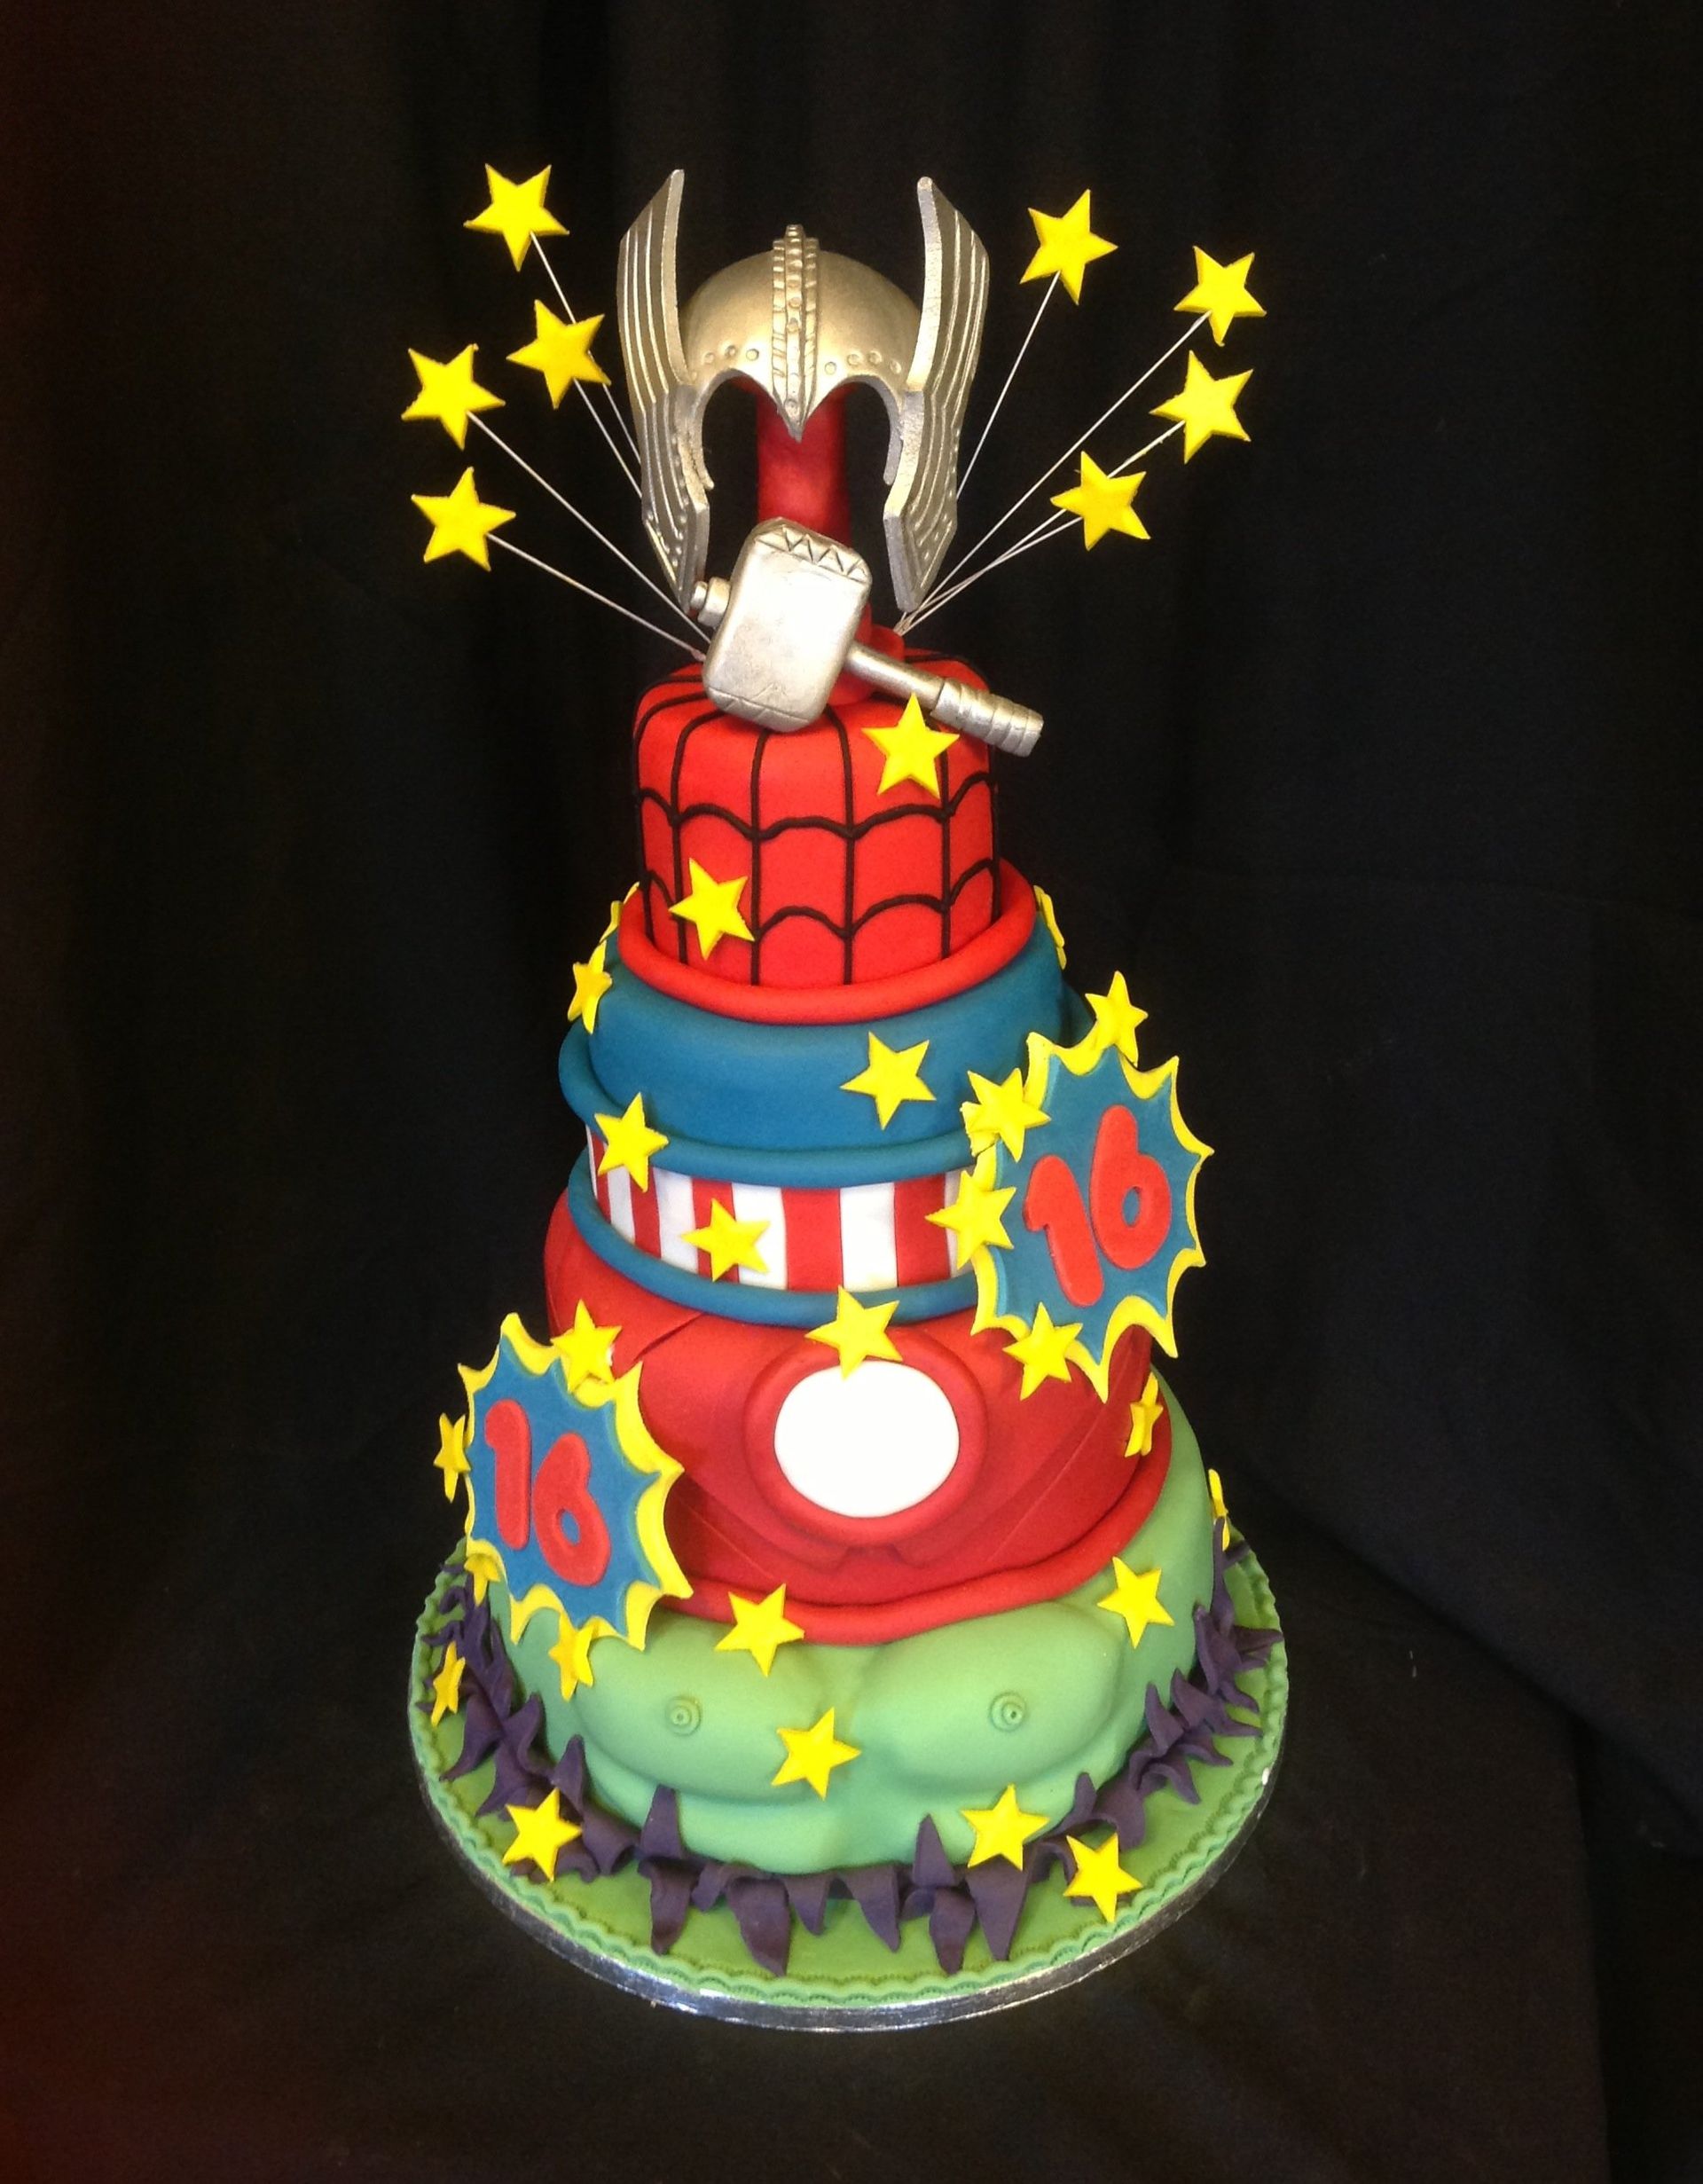 Marvel themed birthday cake